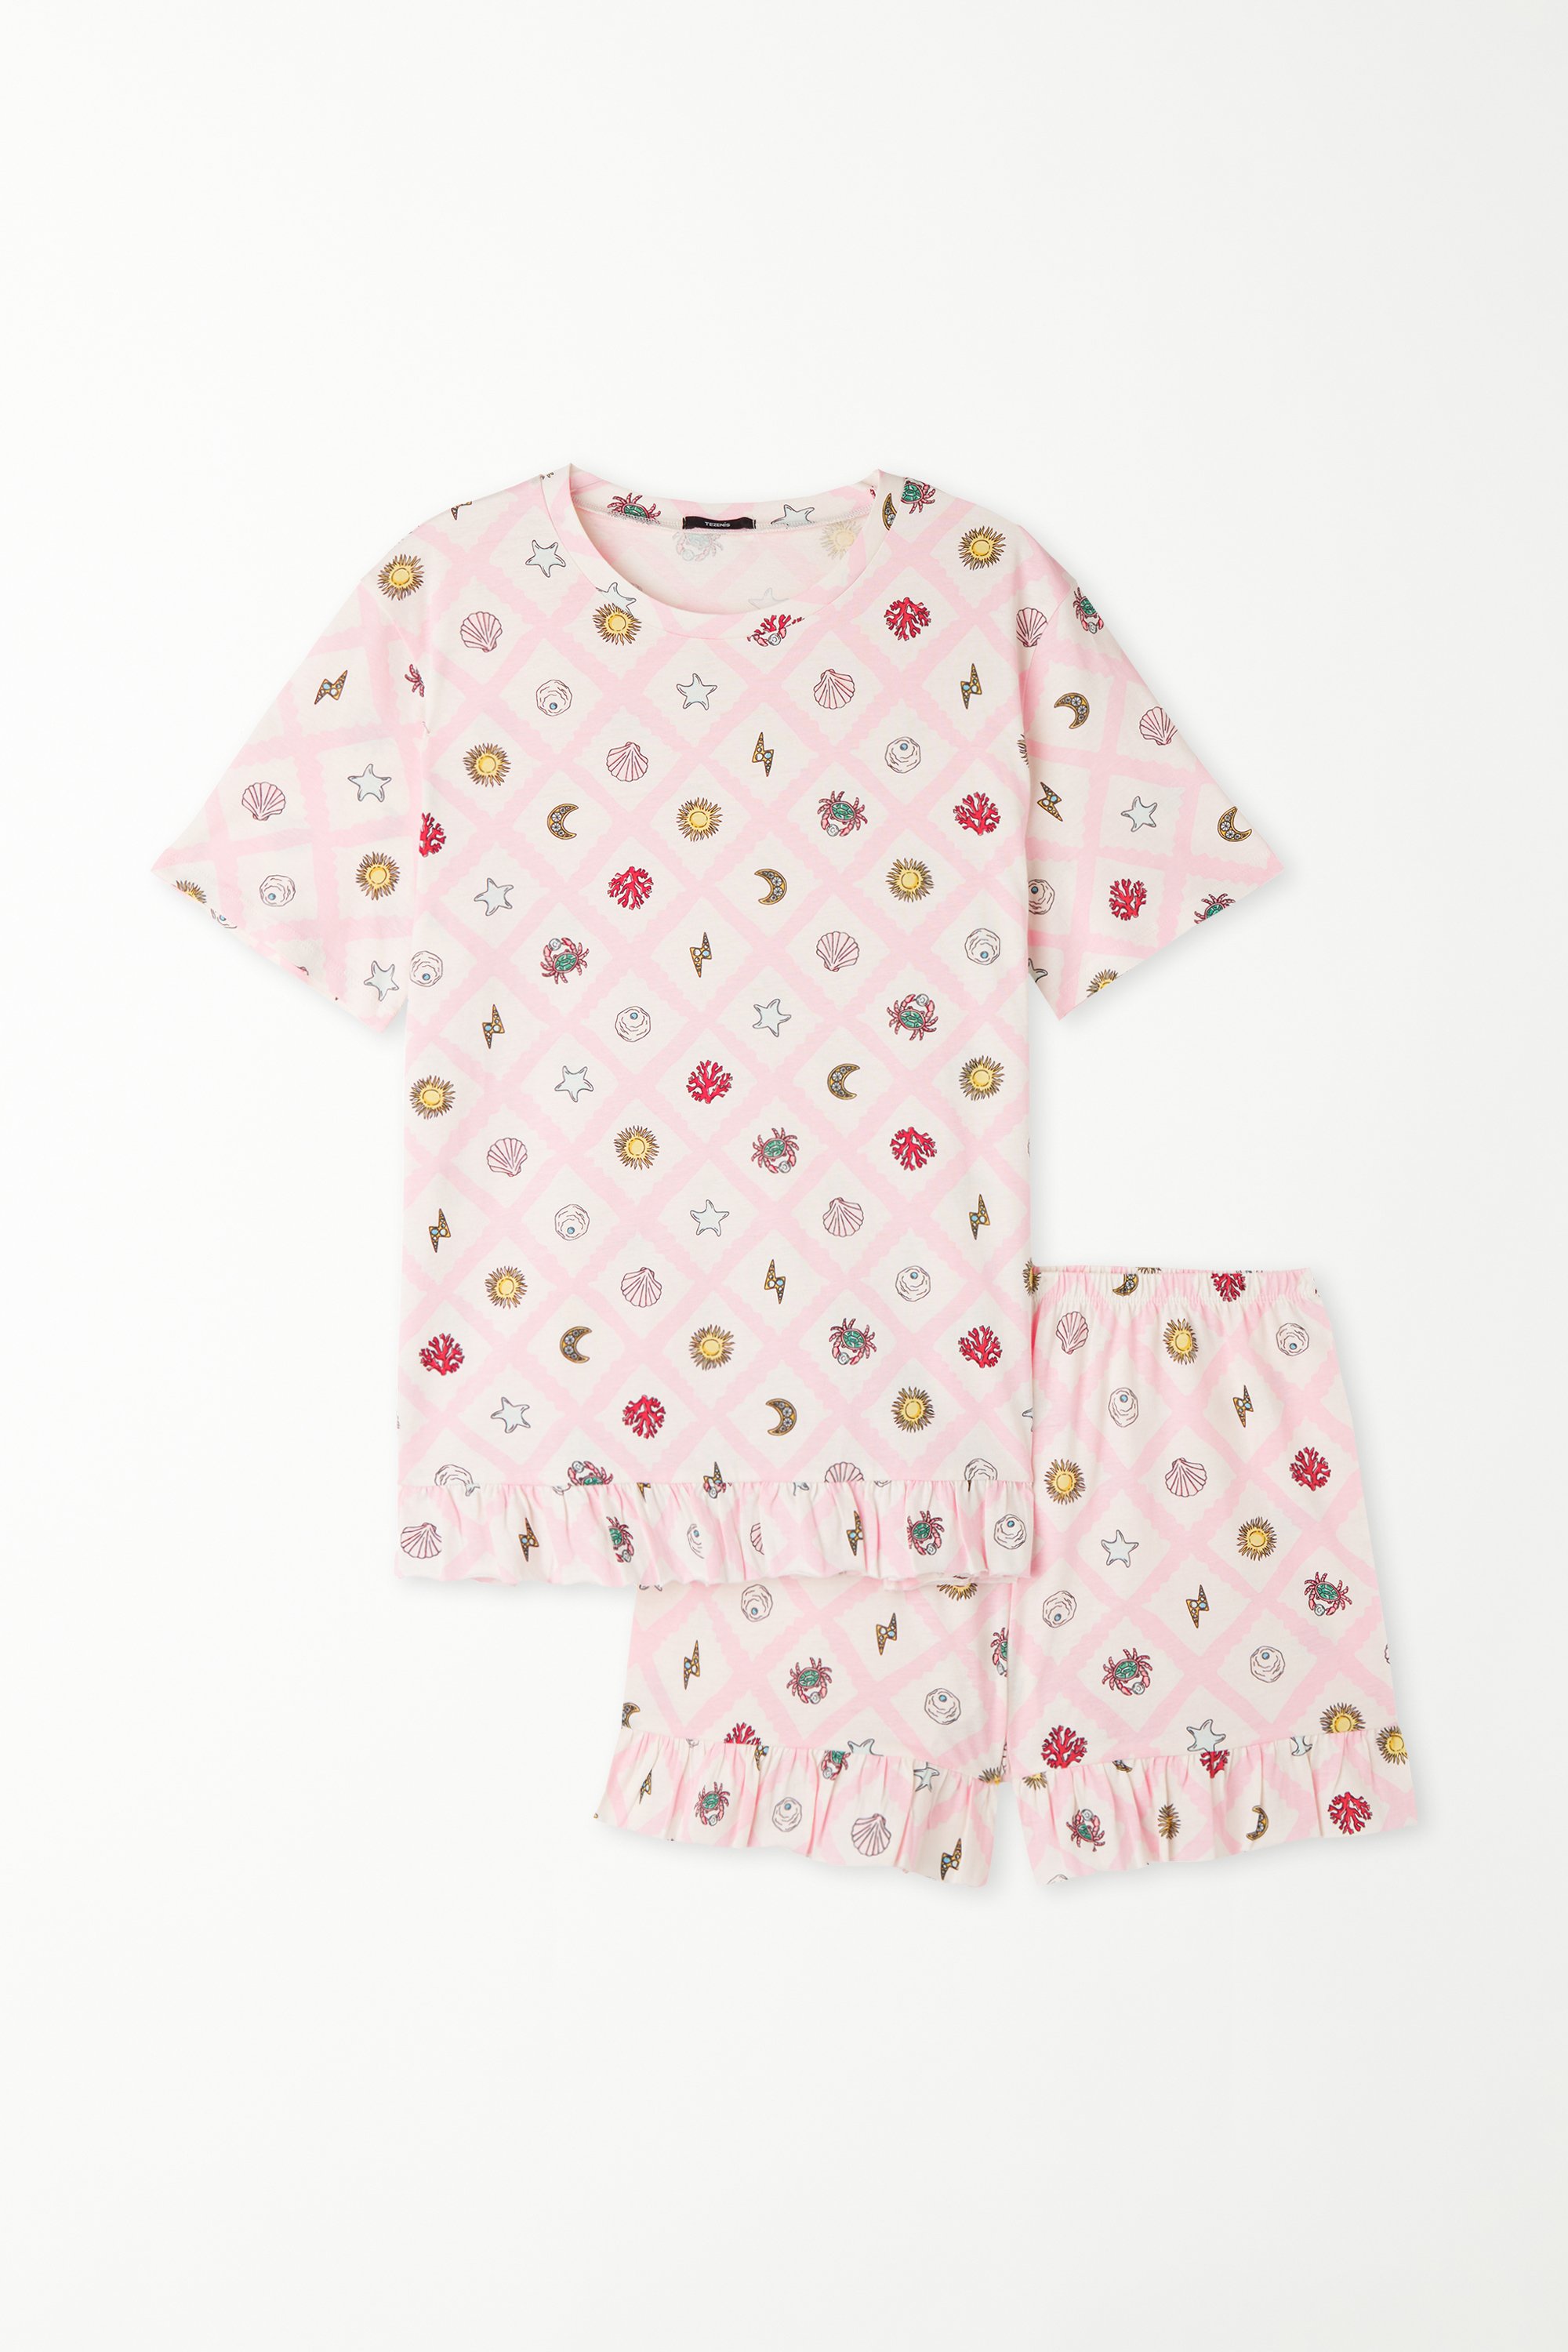 Kurzer Baumwoll-Pyjama mit halblangen Ärmeln und Printmuster Sommer